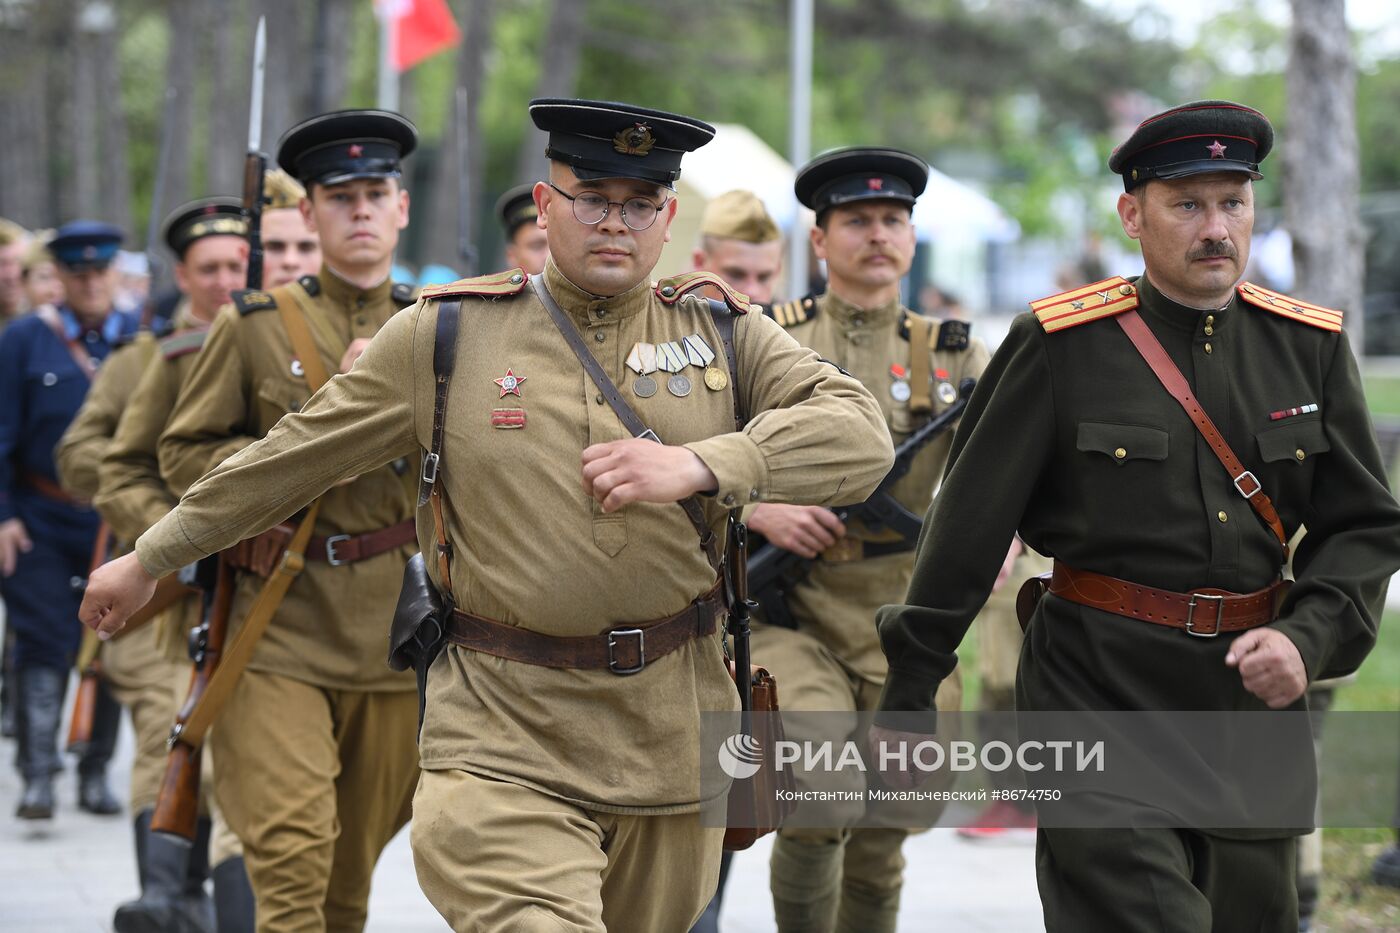 Историко-патриотический фестиваль "Знамена Славы" в Севастополе